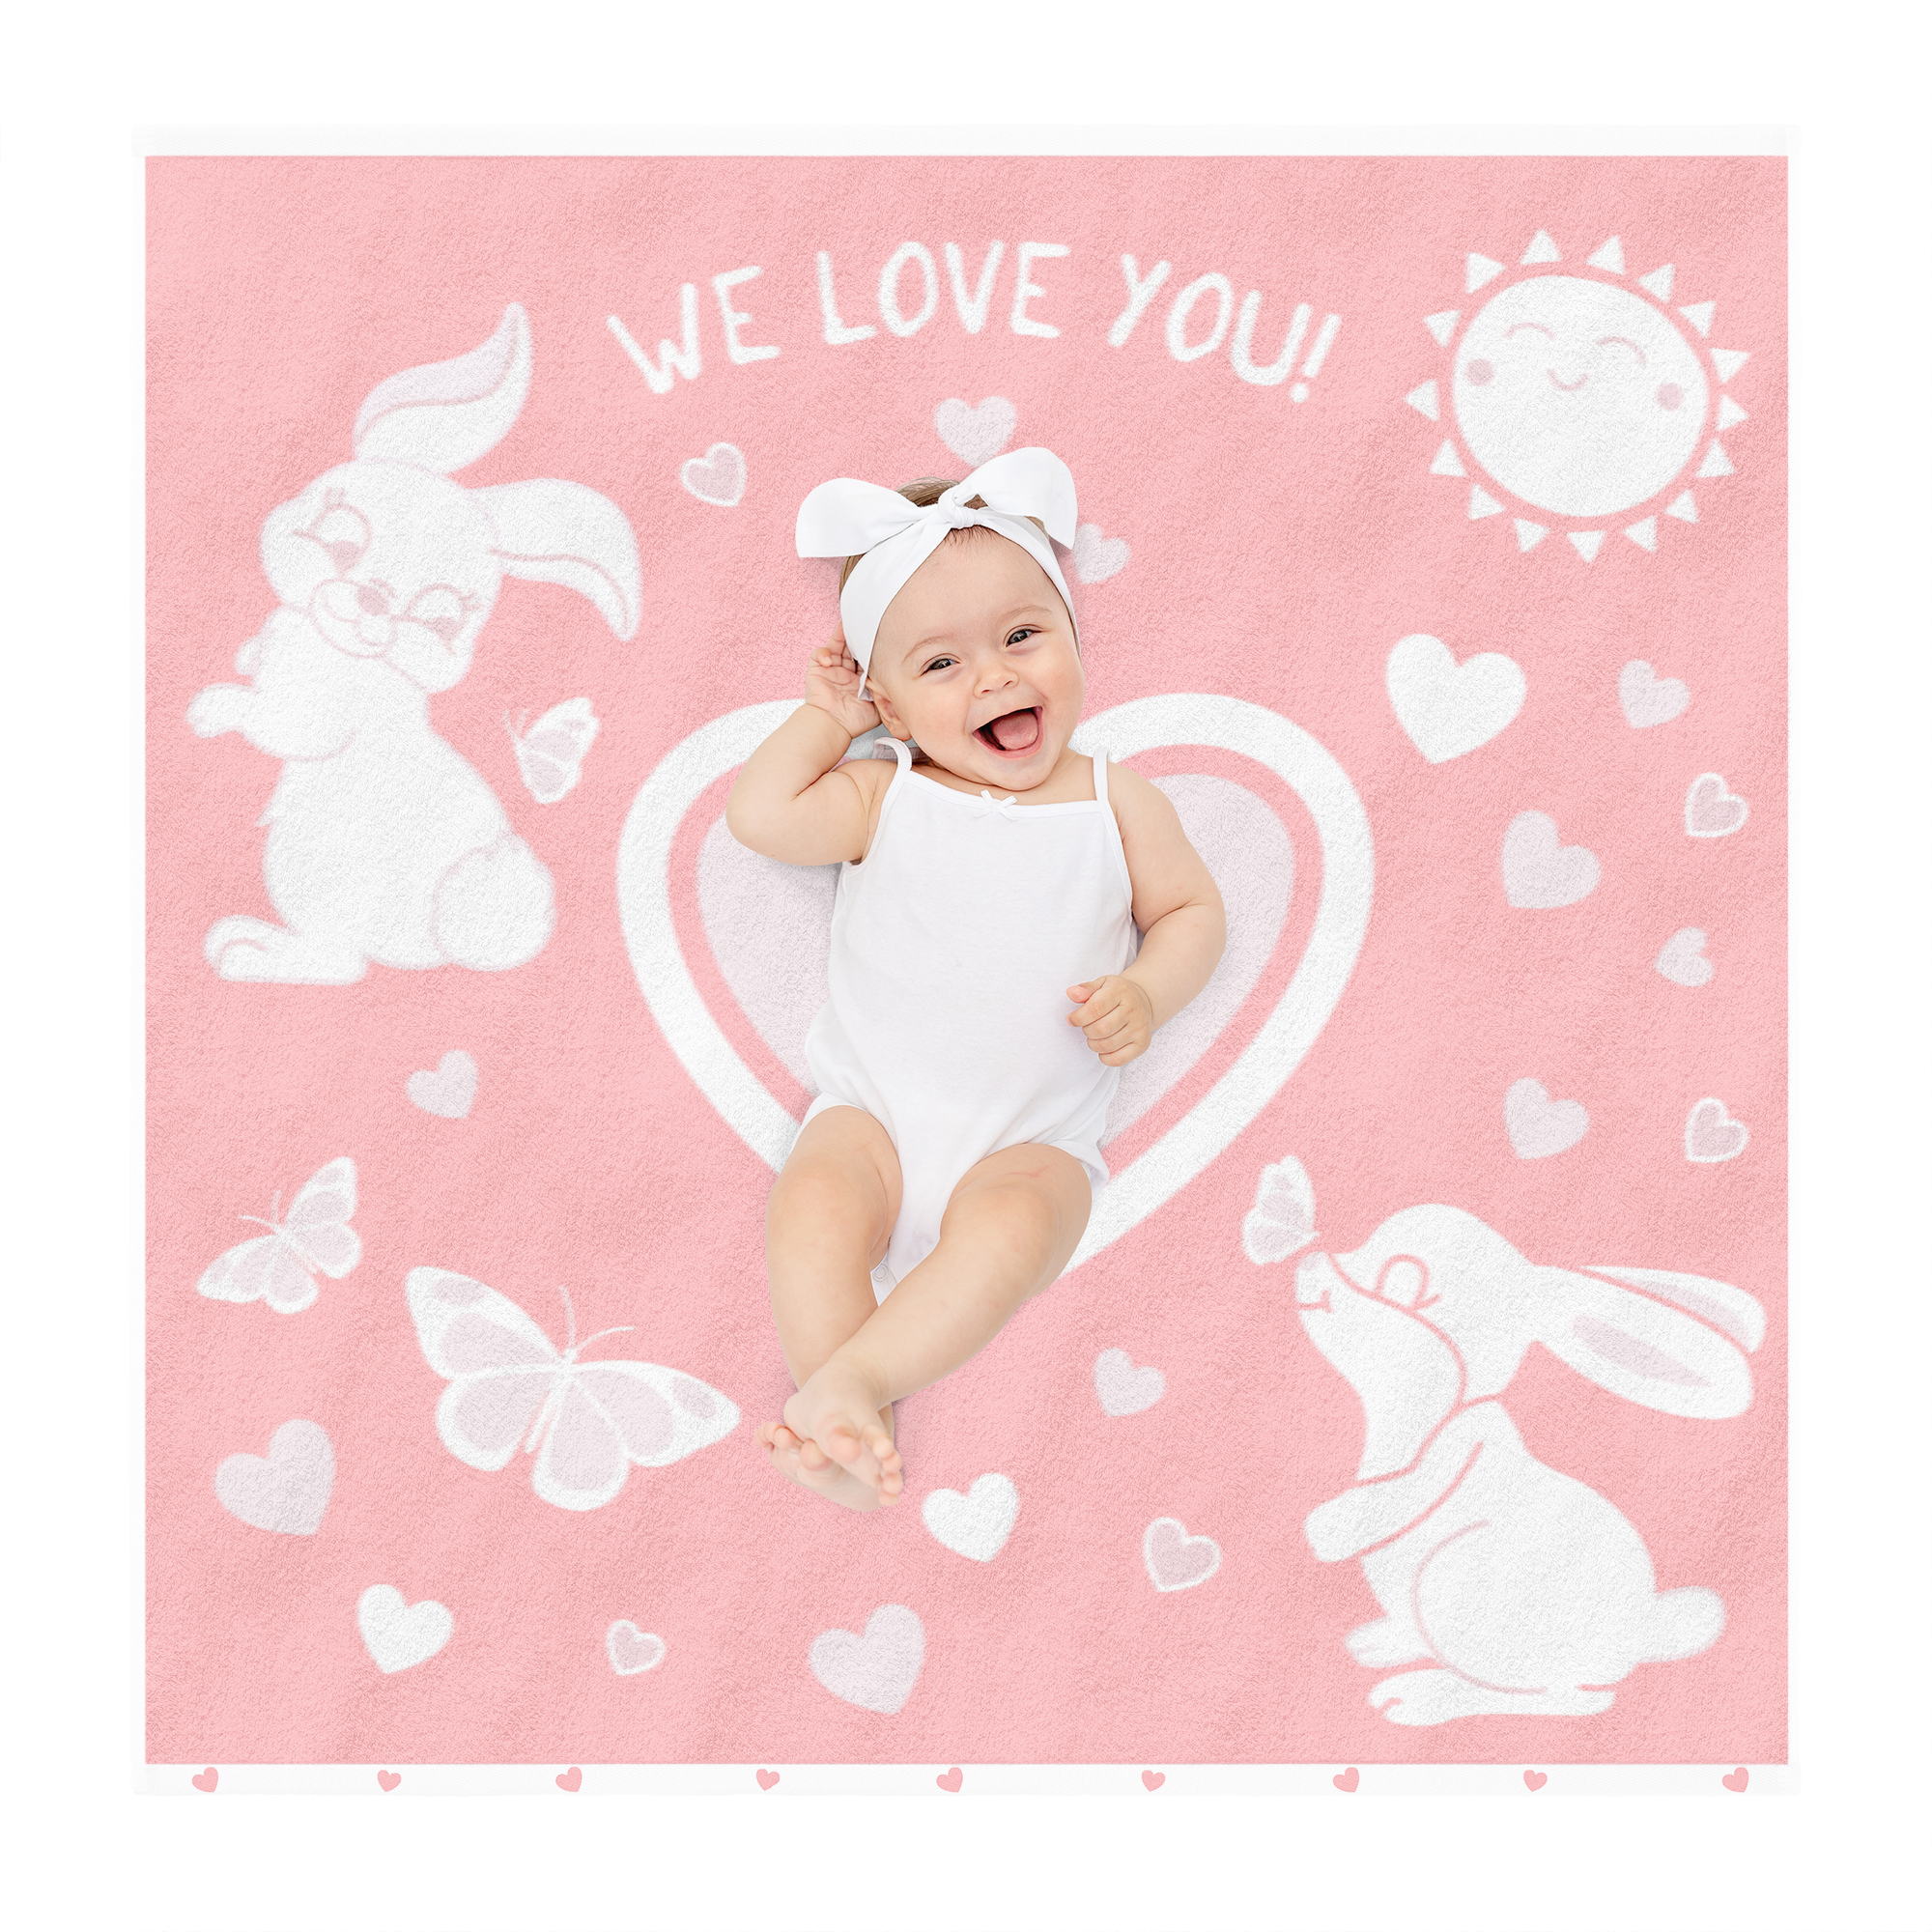 Полотенце Детское LoveMe, 100х100 см, 420г/м2, Зайки we love you, 100% хлопок, 782180 полотенце пончо для новорожденного детское с капюшоном atlasplus 100х100 см кремовый